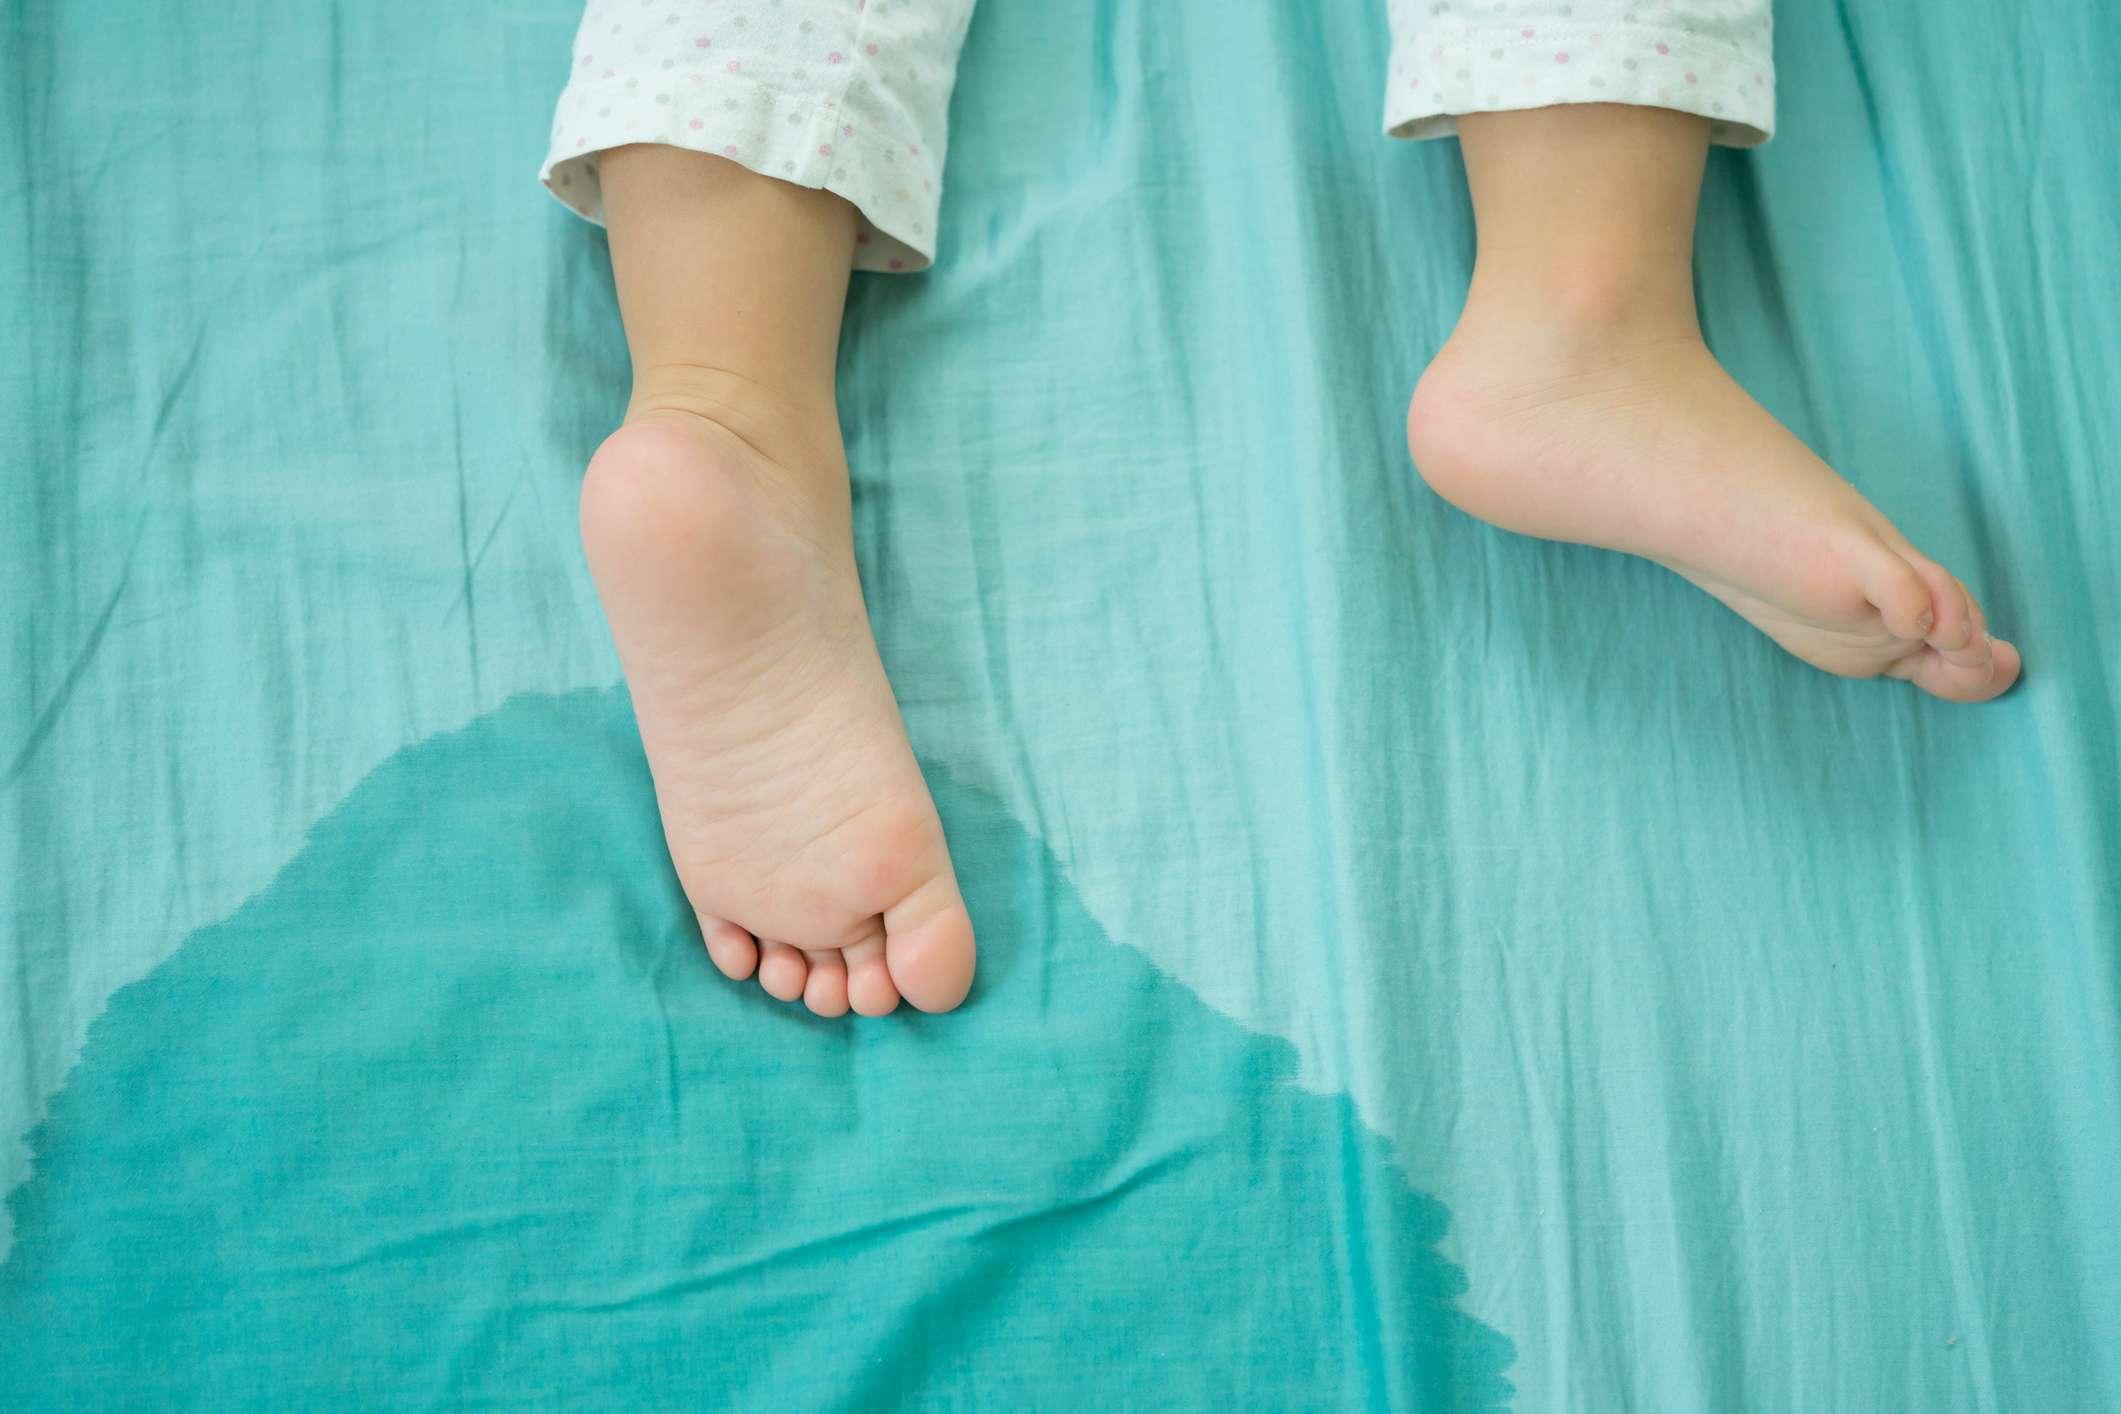 Kinderfüße und pinkeln in einer Matratze.kleine Mädchenfüße und pinkeln am Morgen in Bettlaken.Entwicklungskonzept für Kinder.